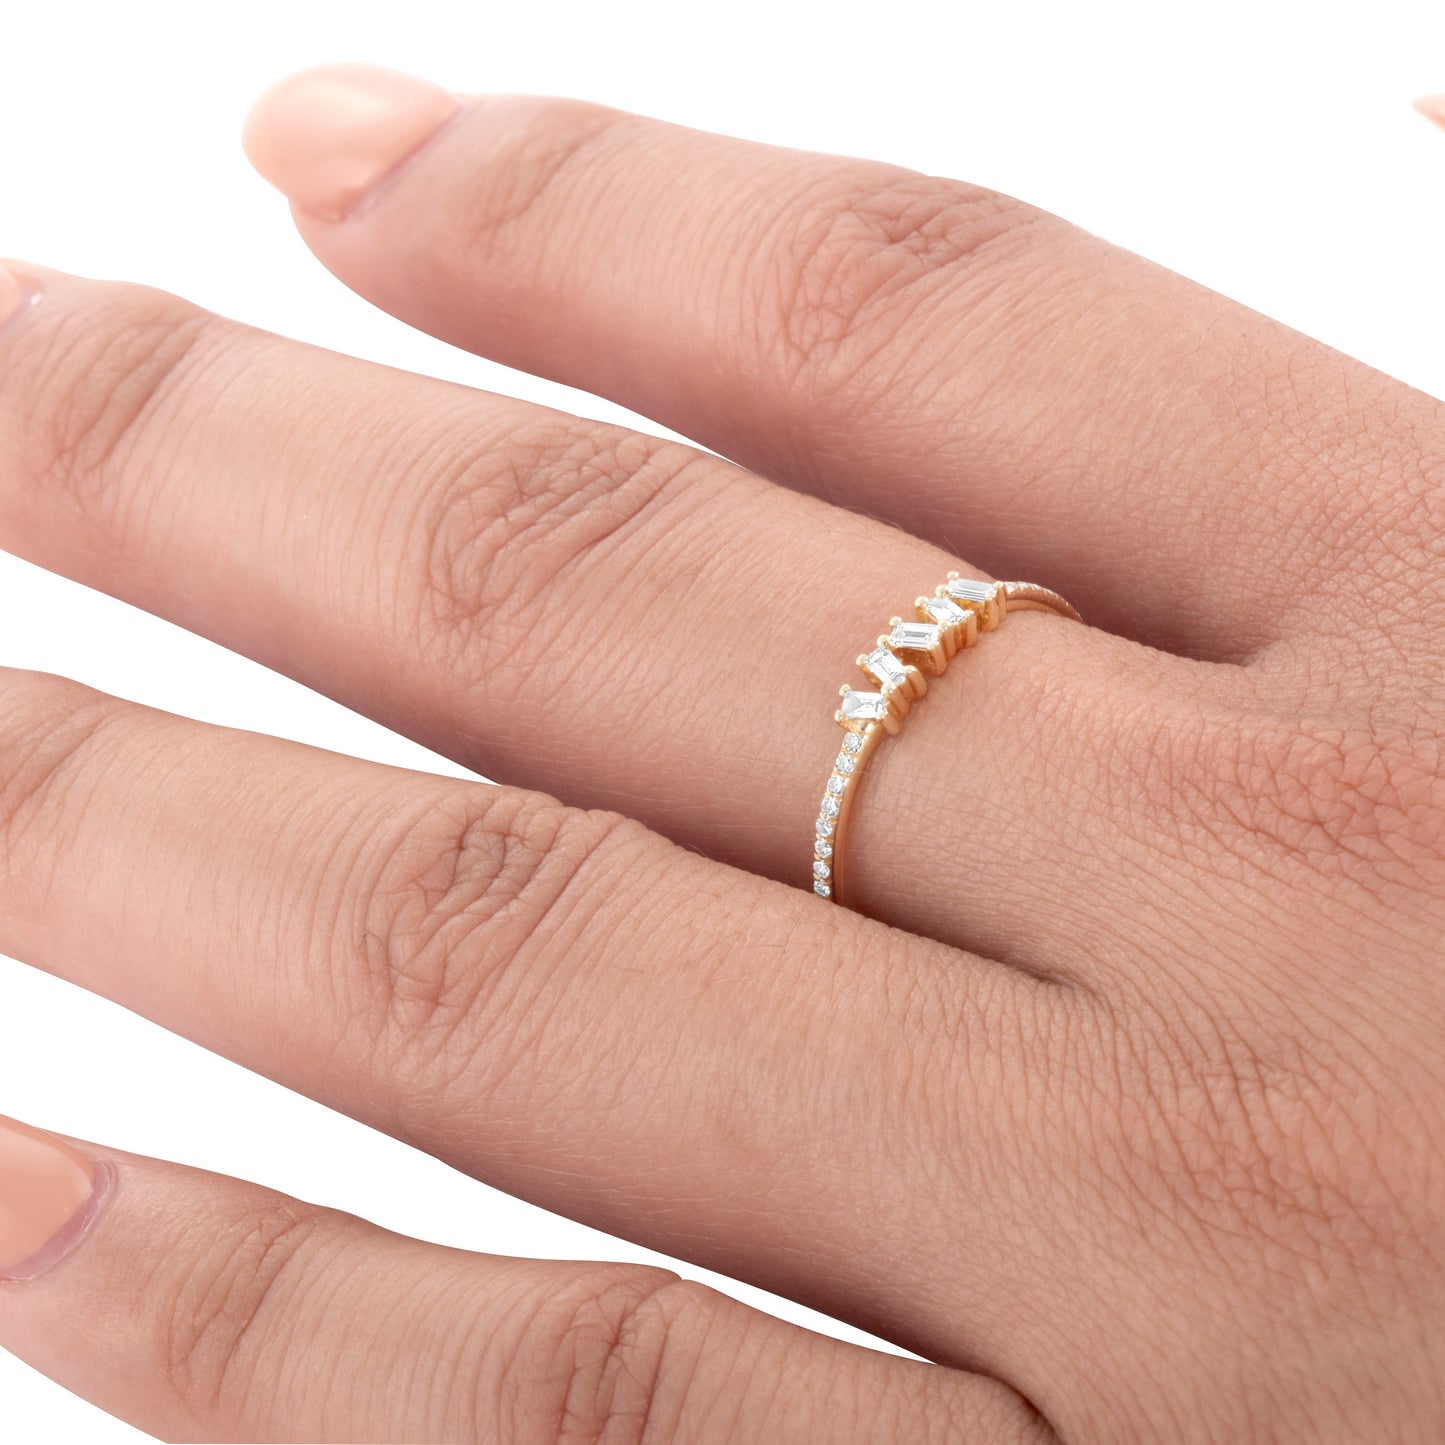 Tiny Baguette Ring For Women V0256